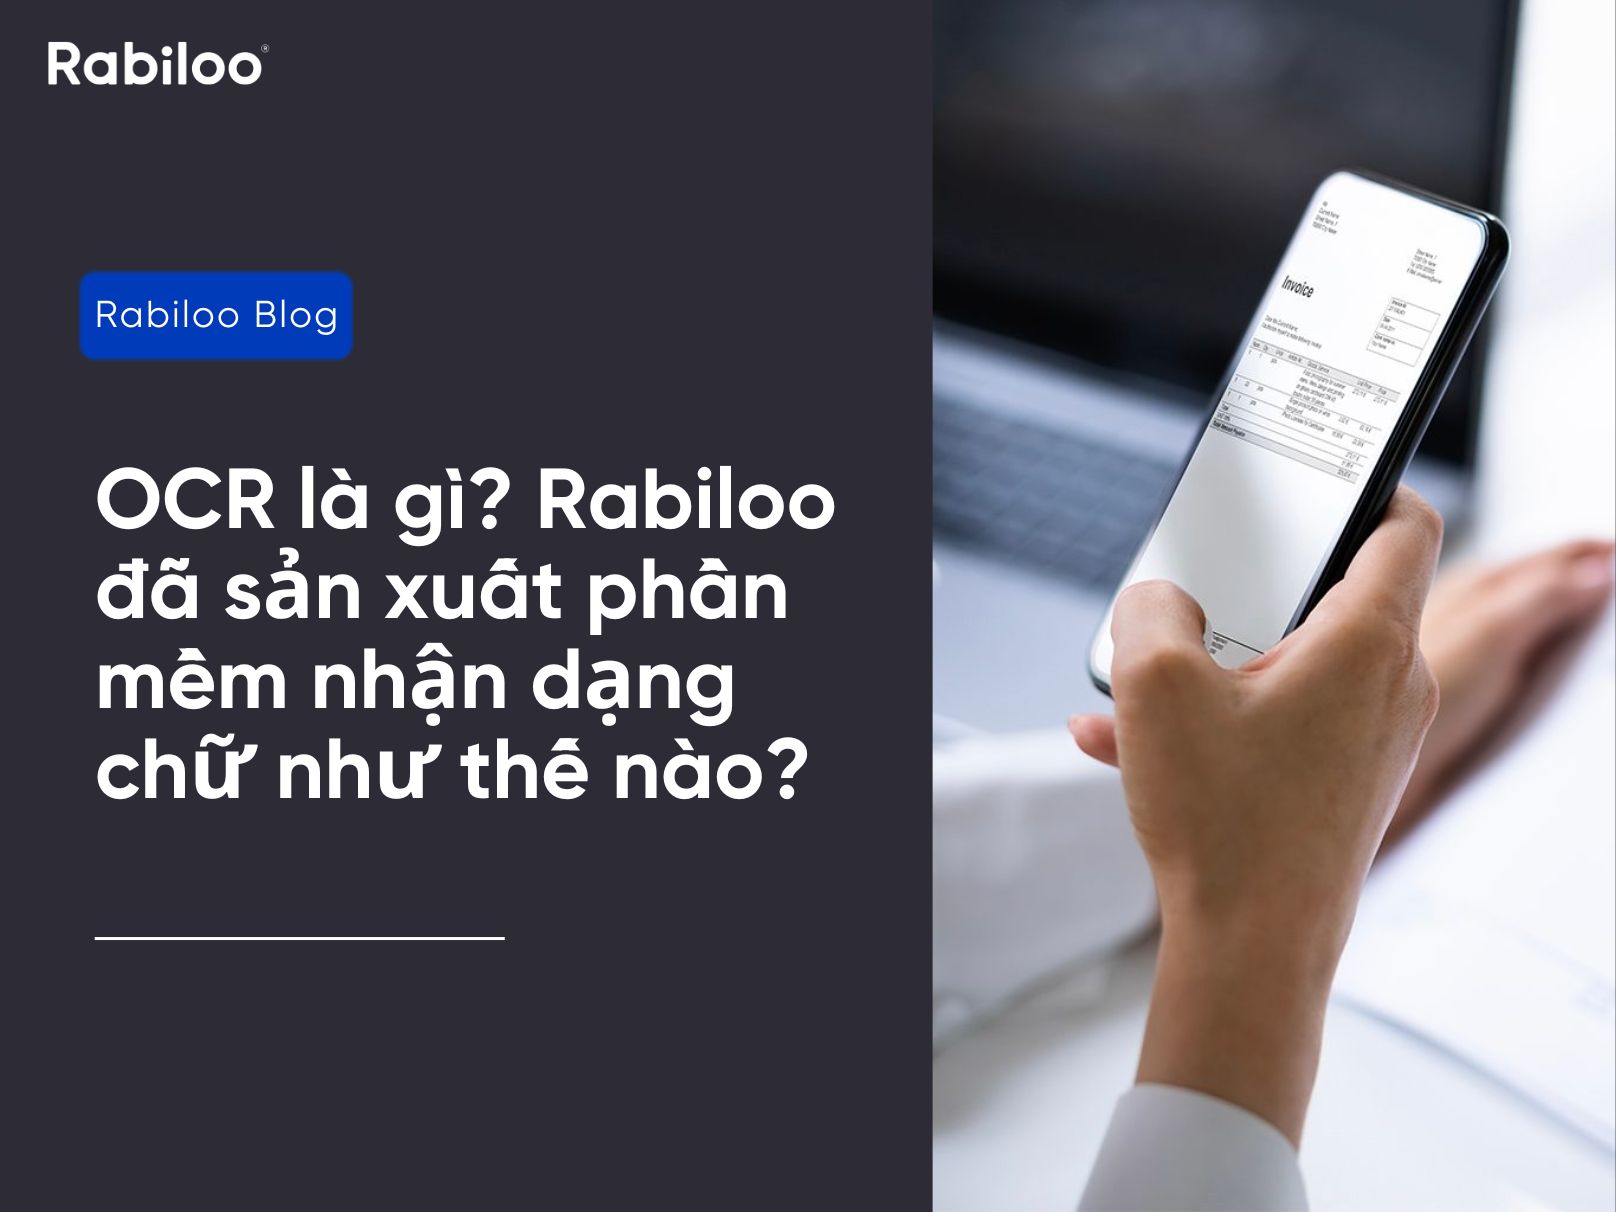 OCR là gì? Rabiloo đã sản xuất phần mềm nhận dạng chữ như thế nào?